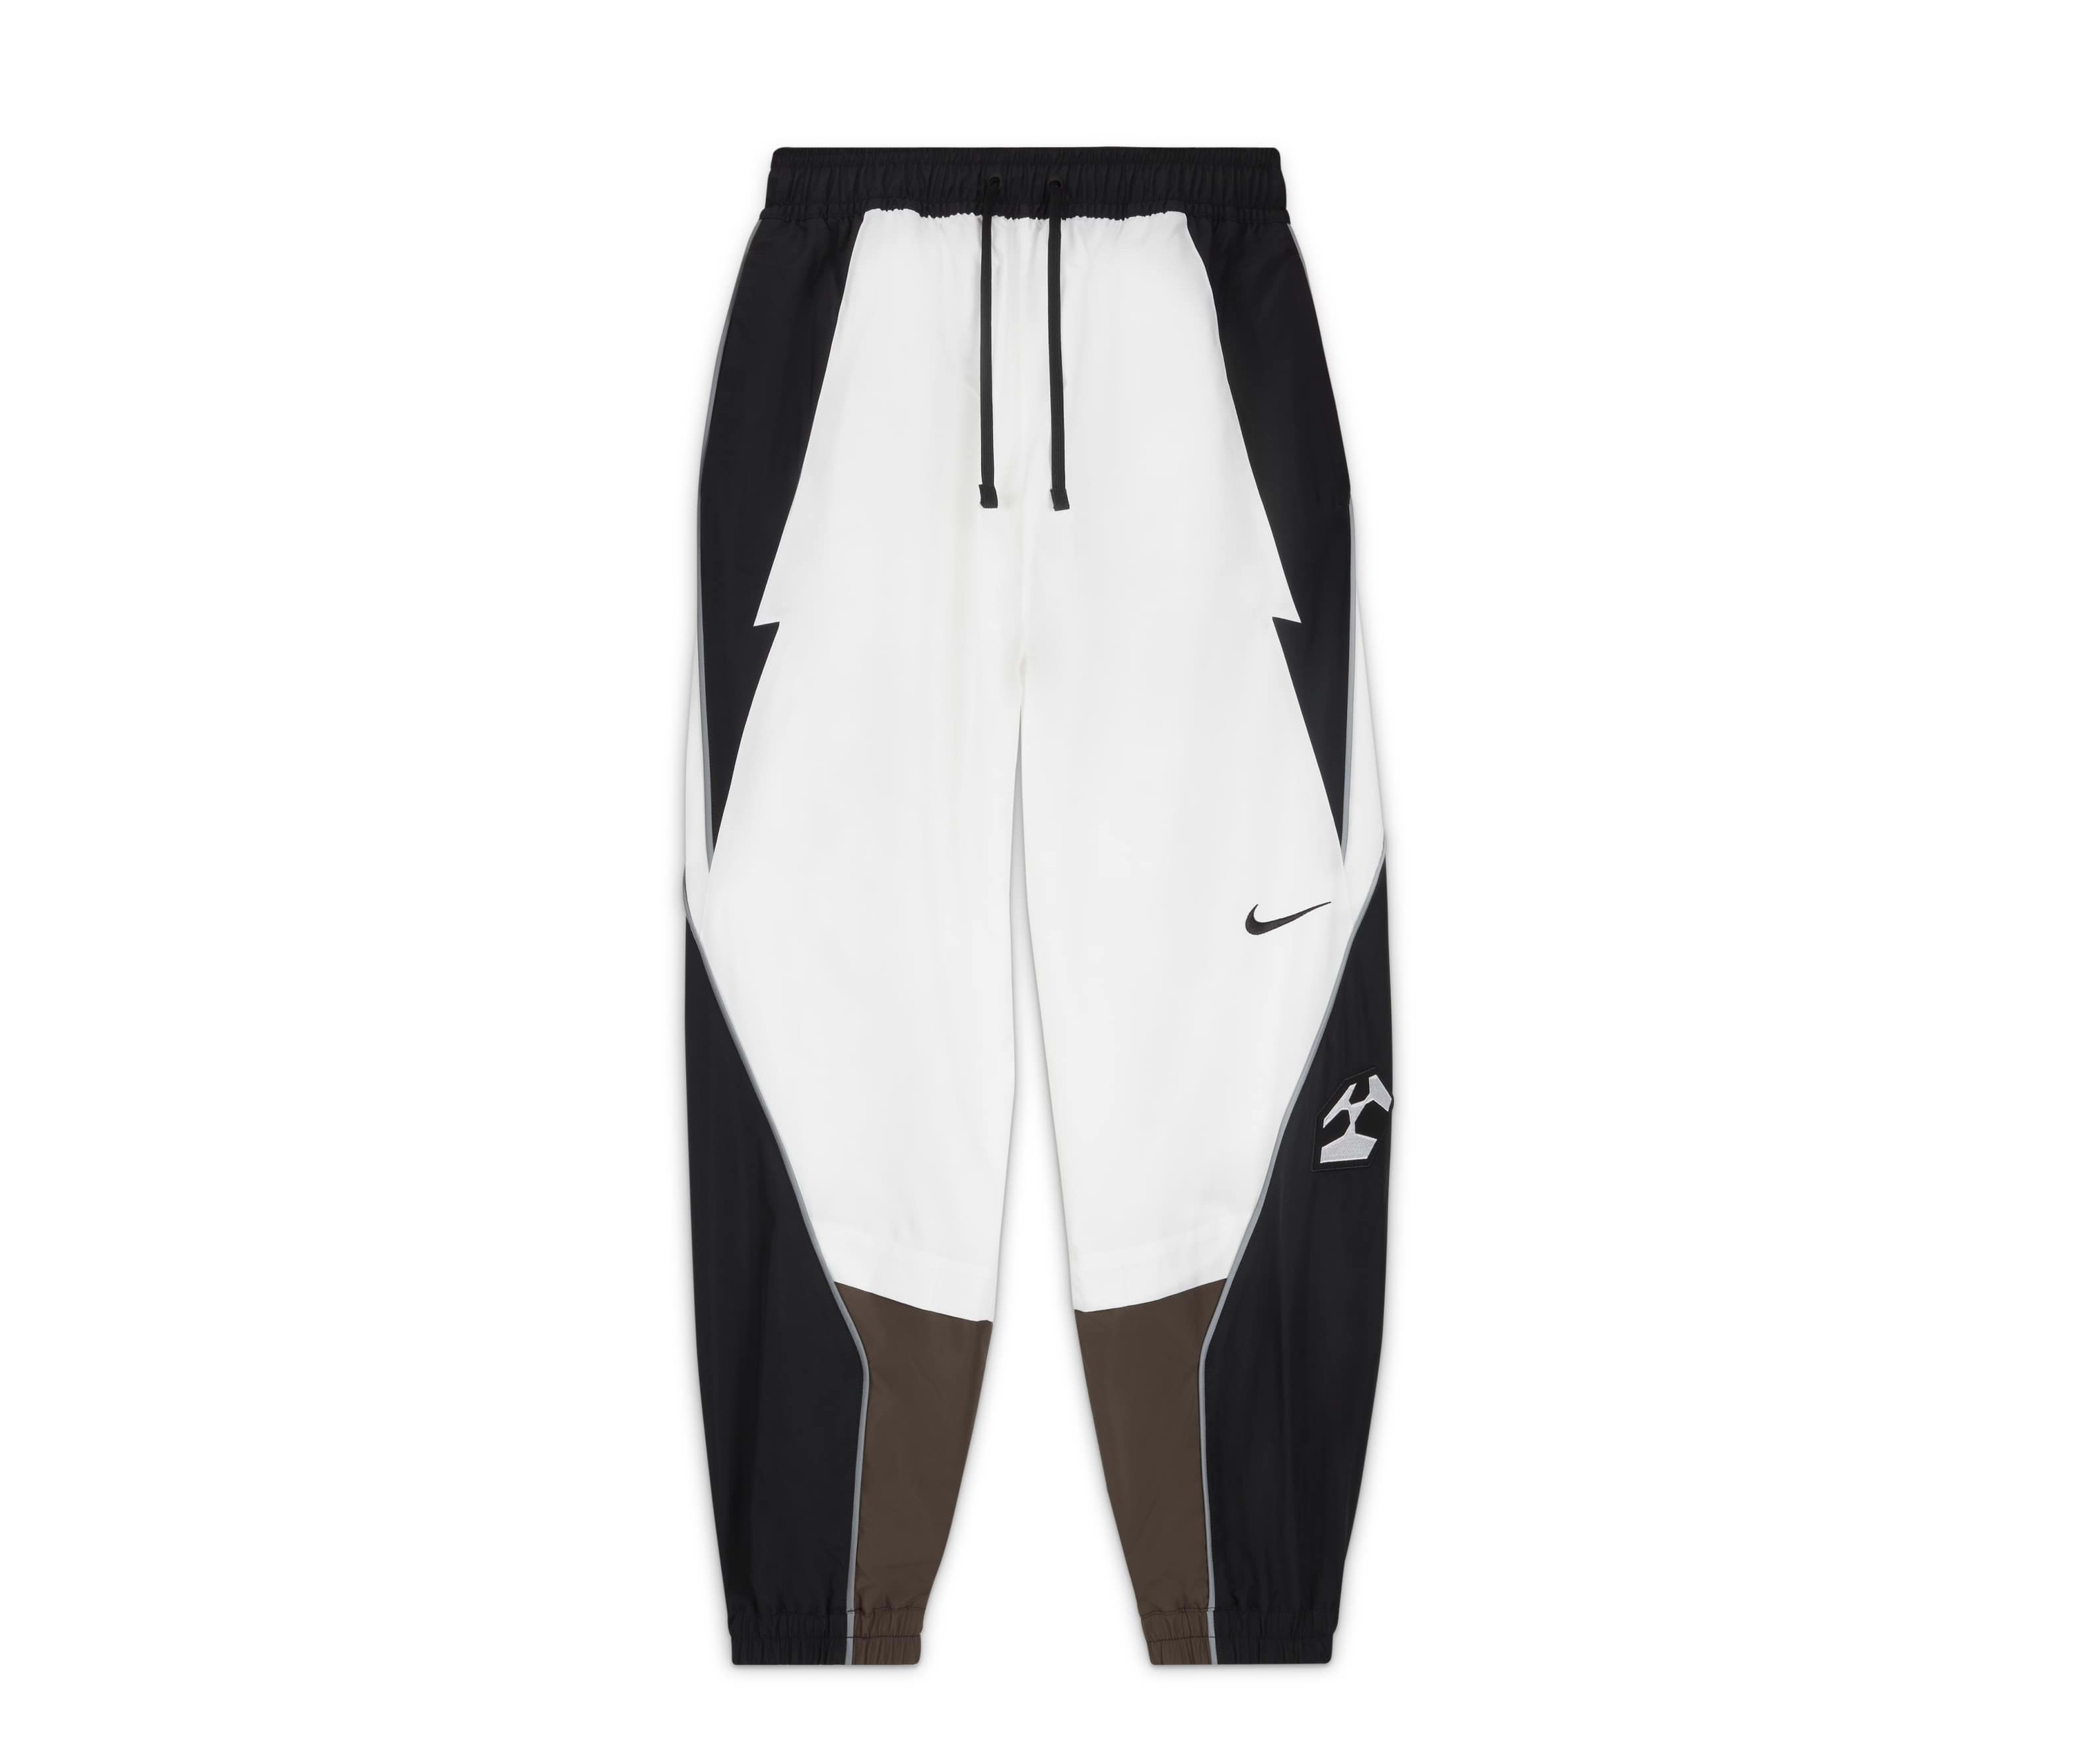 Acronym x Nike Woven Pants (